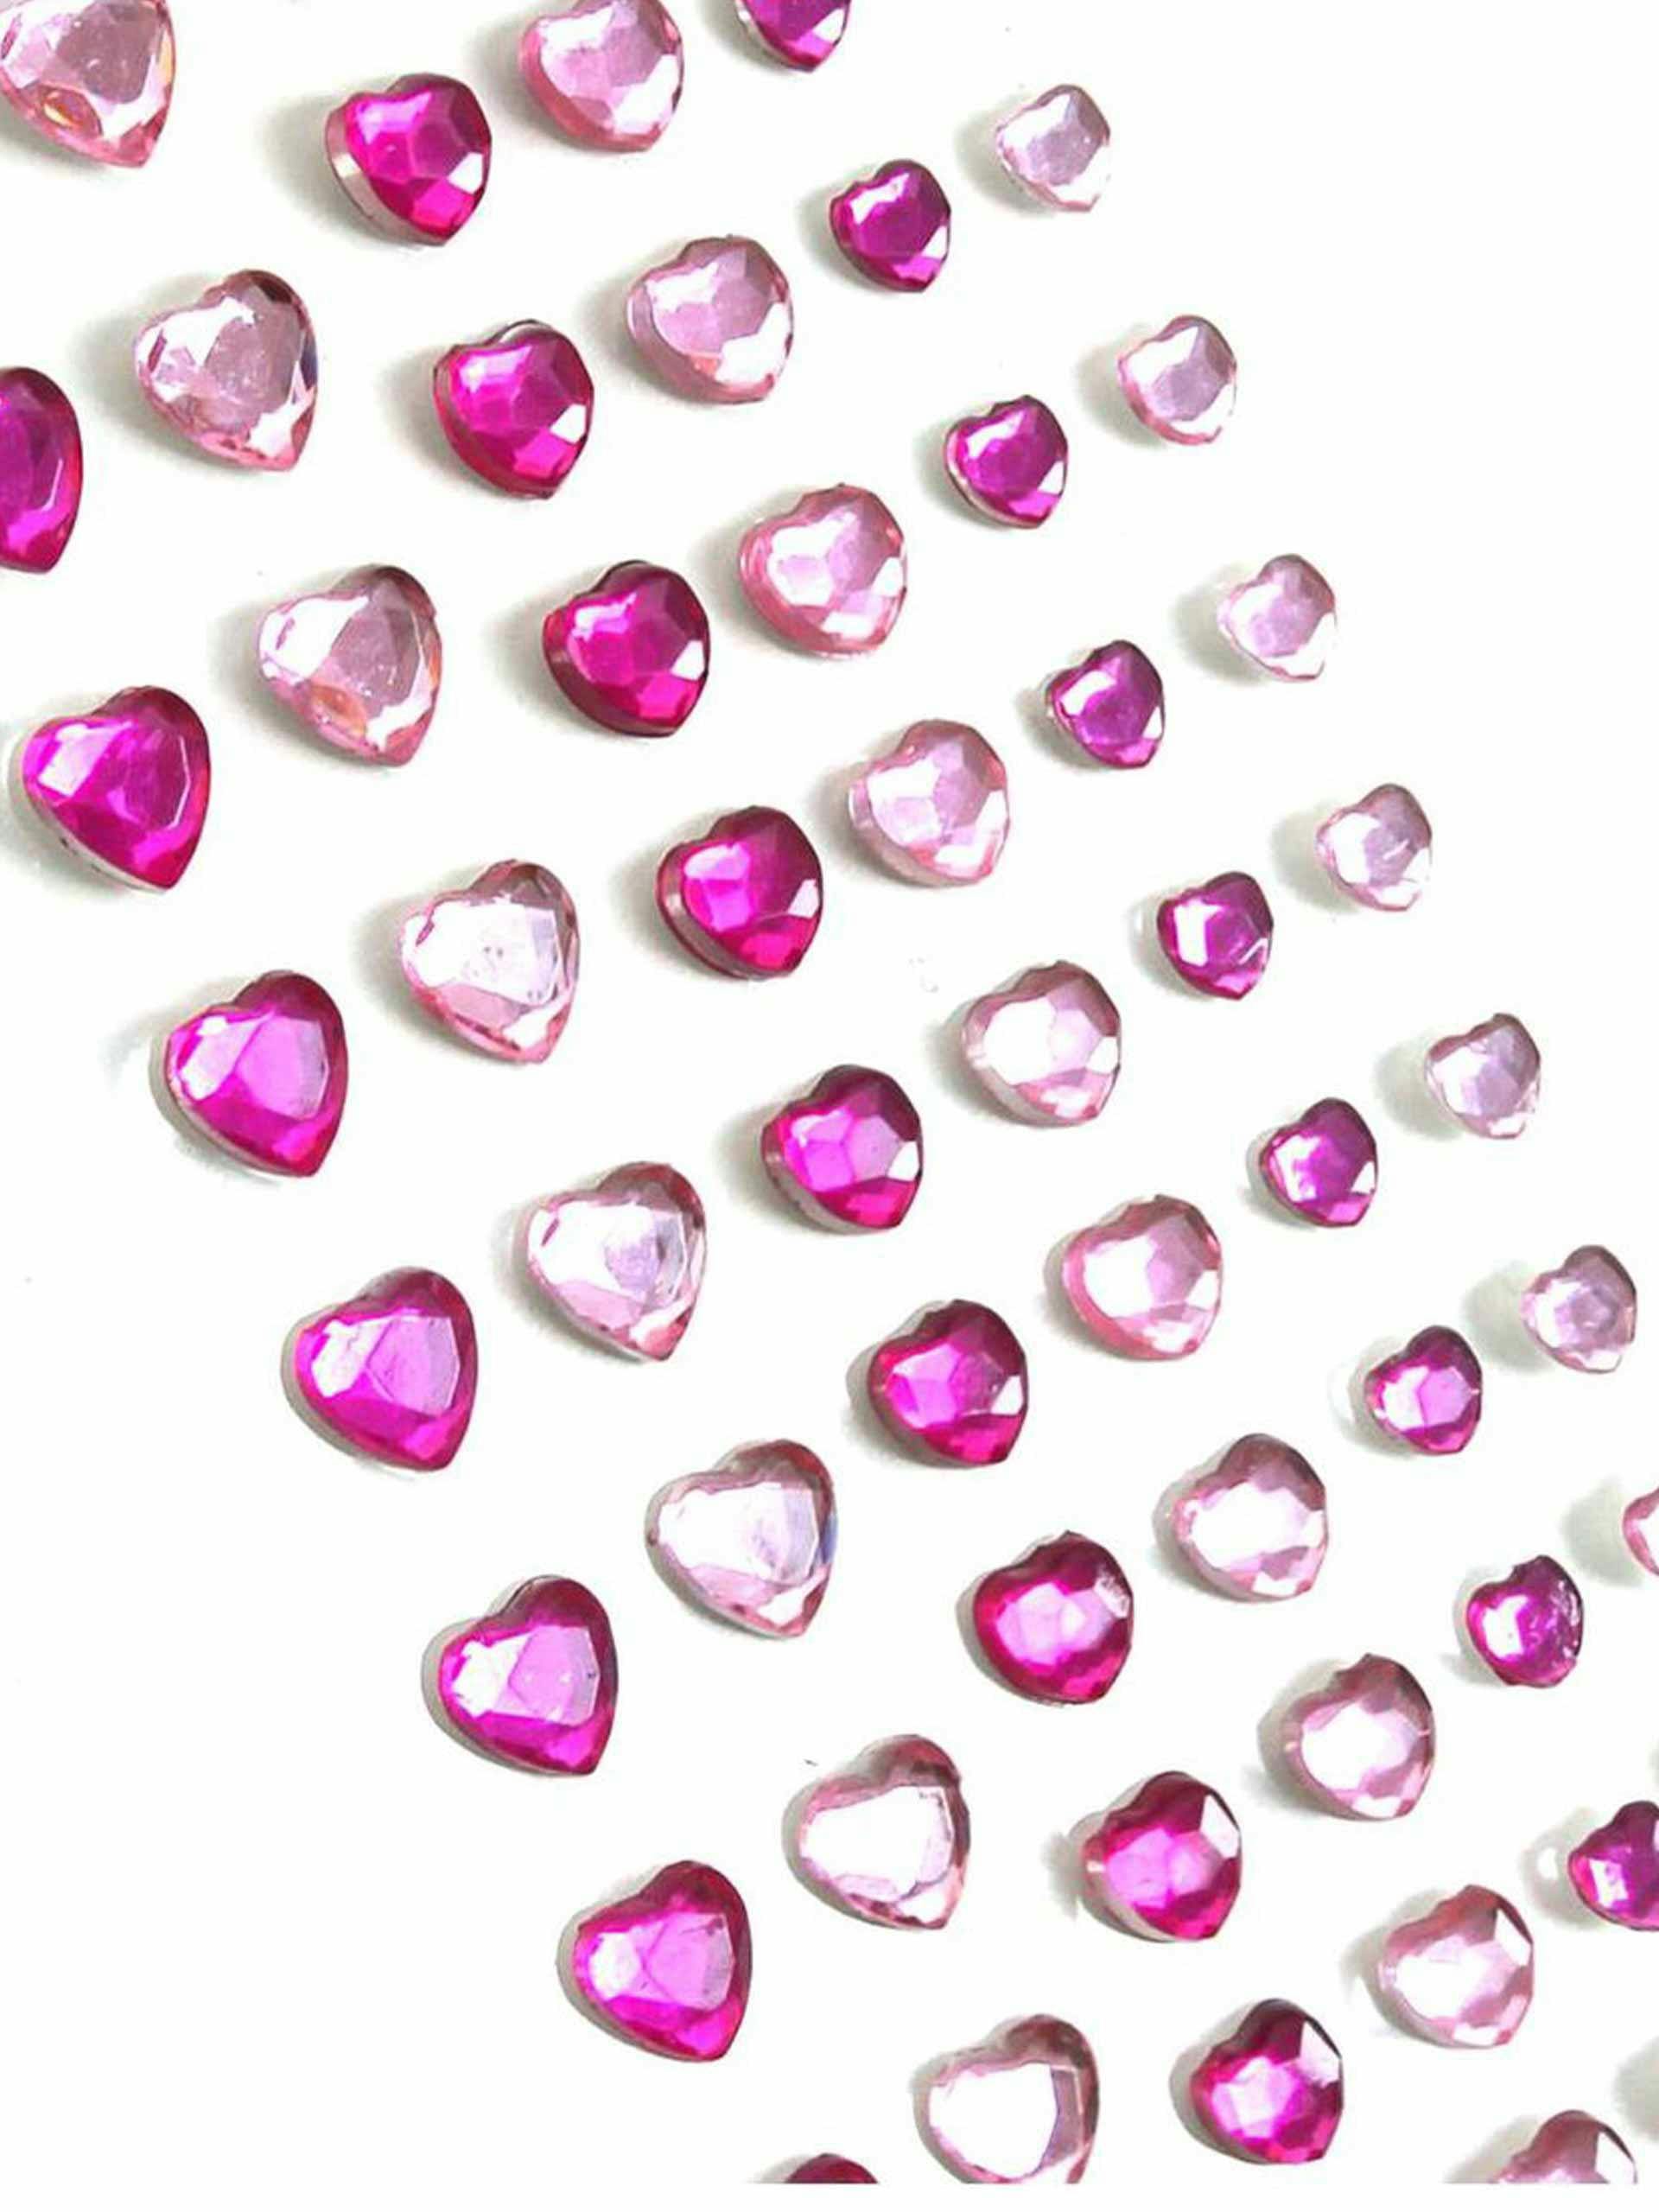 Pink heart gems